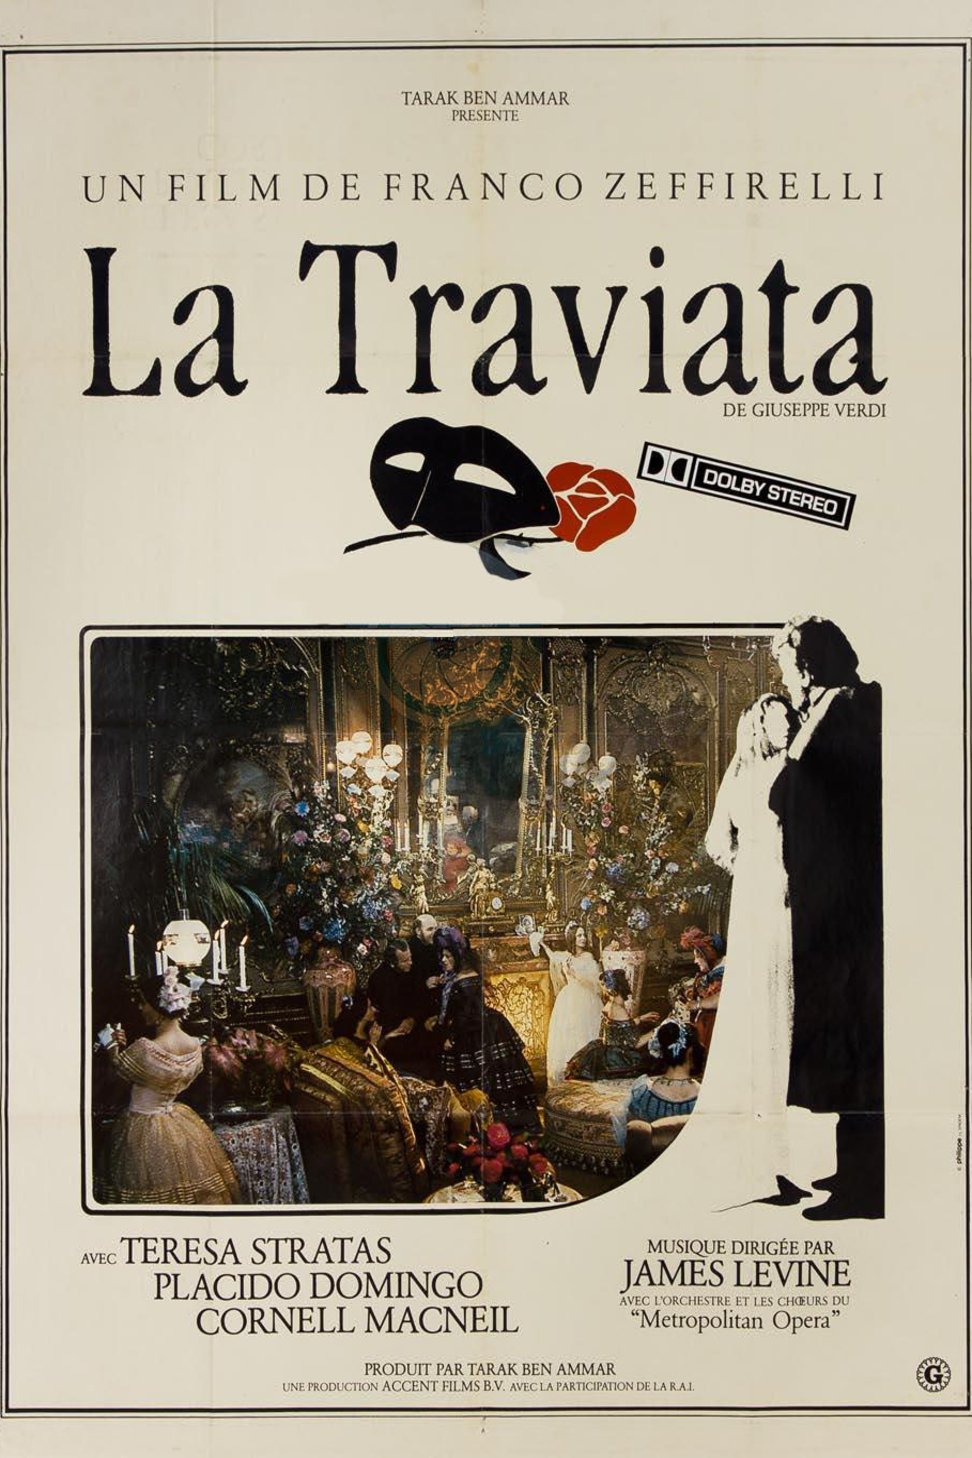 Italian poster of the movie La Traviata